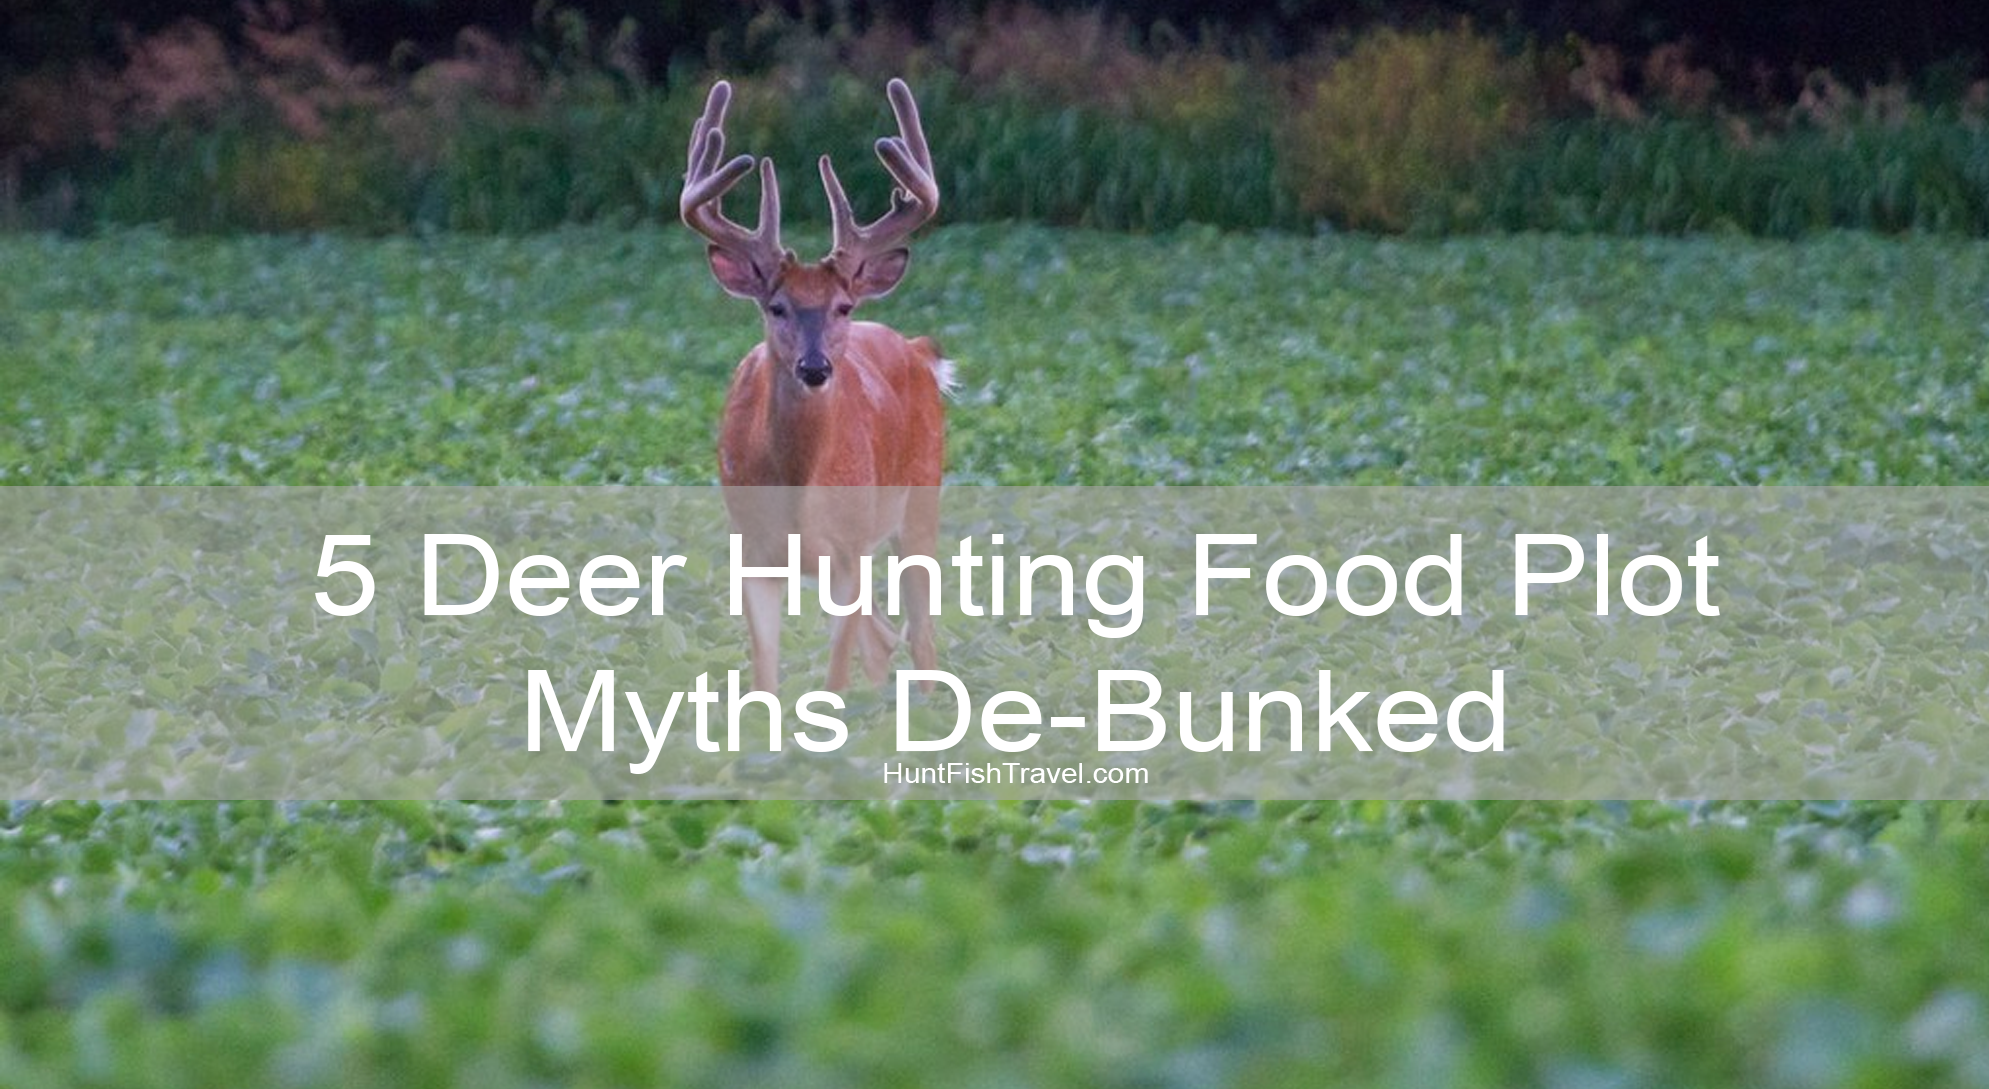 5 Deer Hunting Food Plot Myths De-Bunked